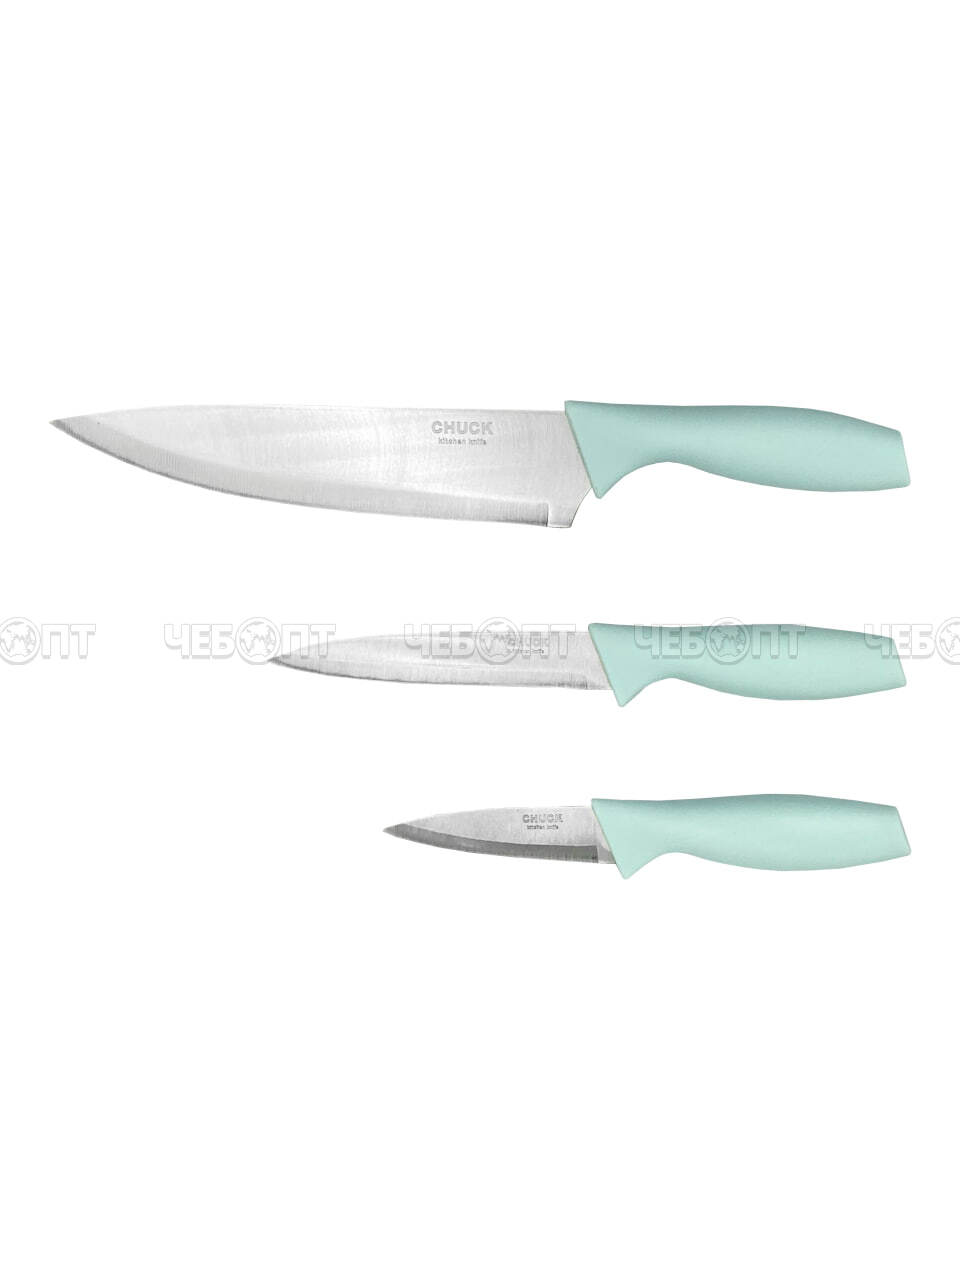 Набор кухонных ножей 3 предмета (нож поварской, универсальный, для овощей) арт. 260058 $ [120] GOODSEE. ЧЕБОПТ.